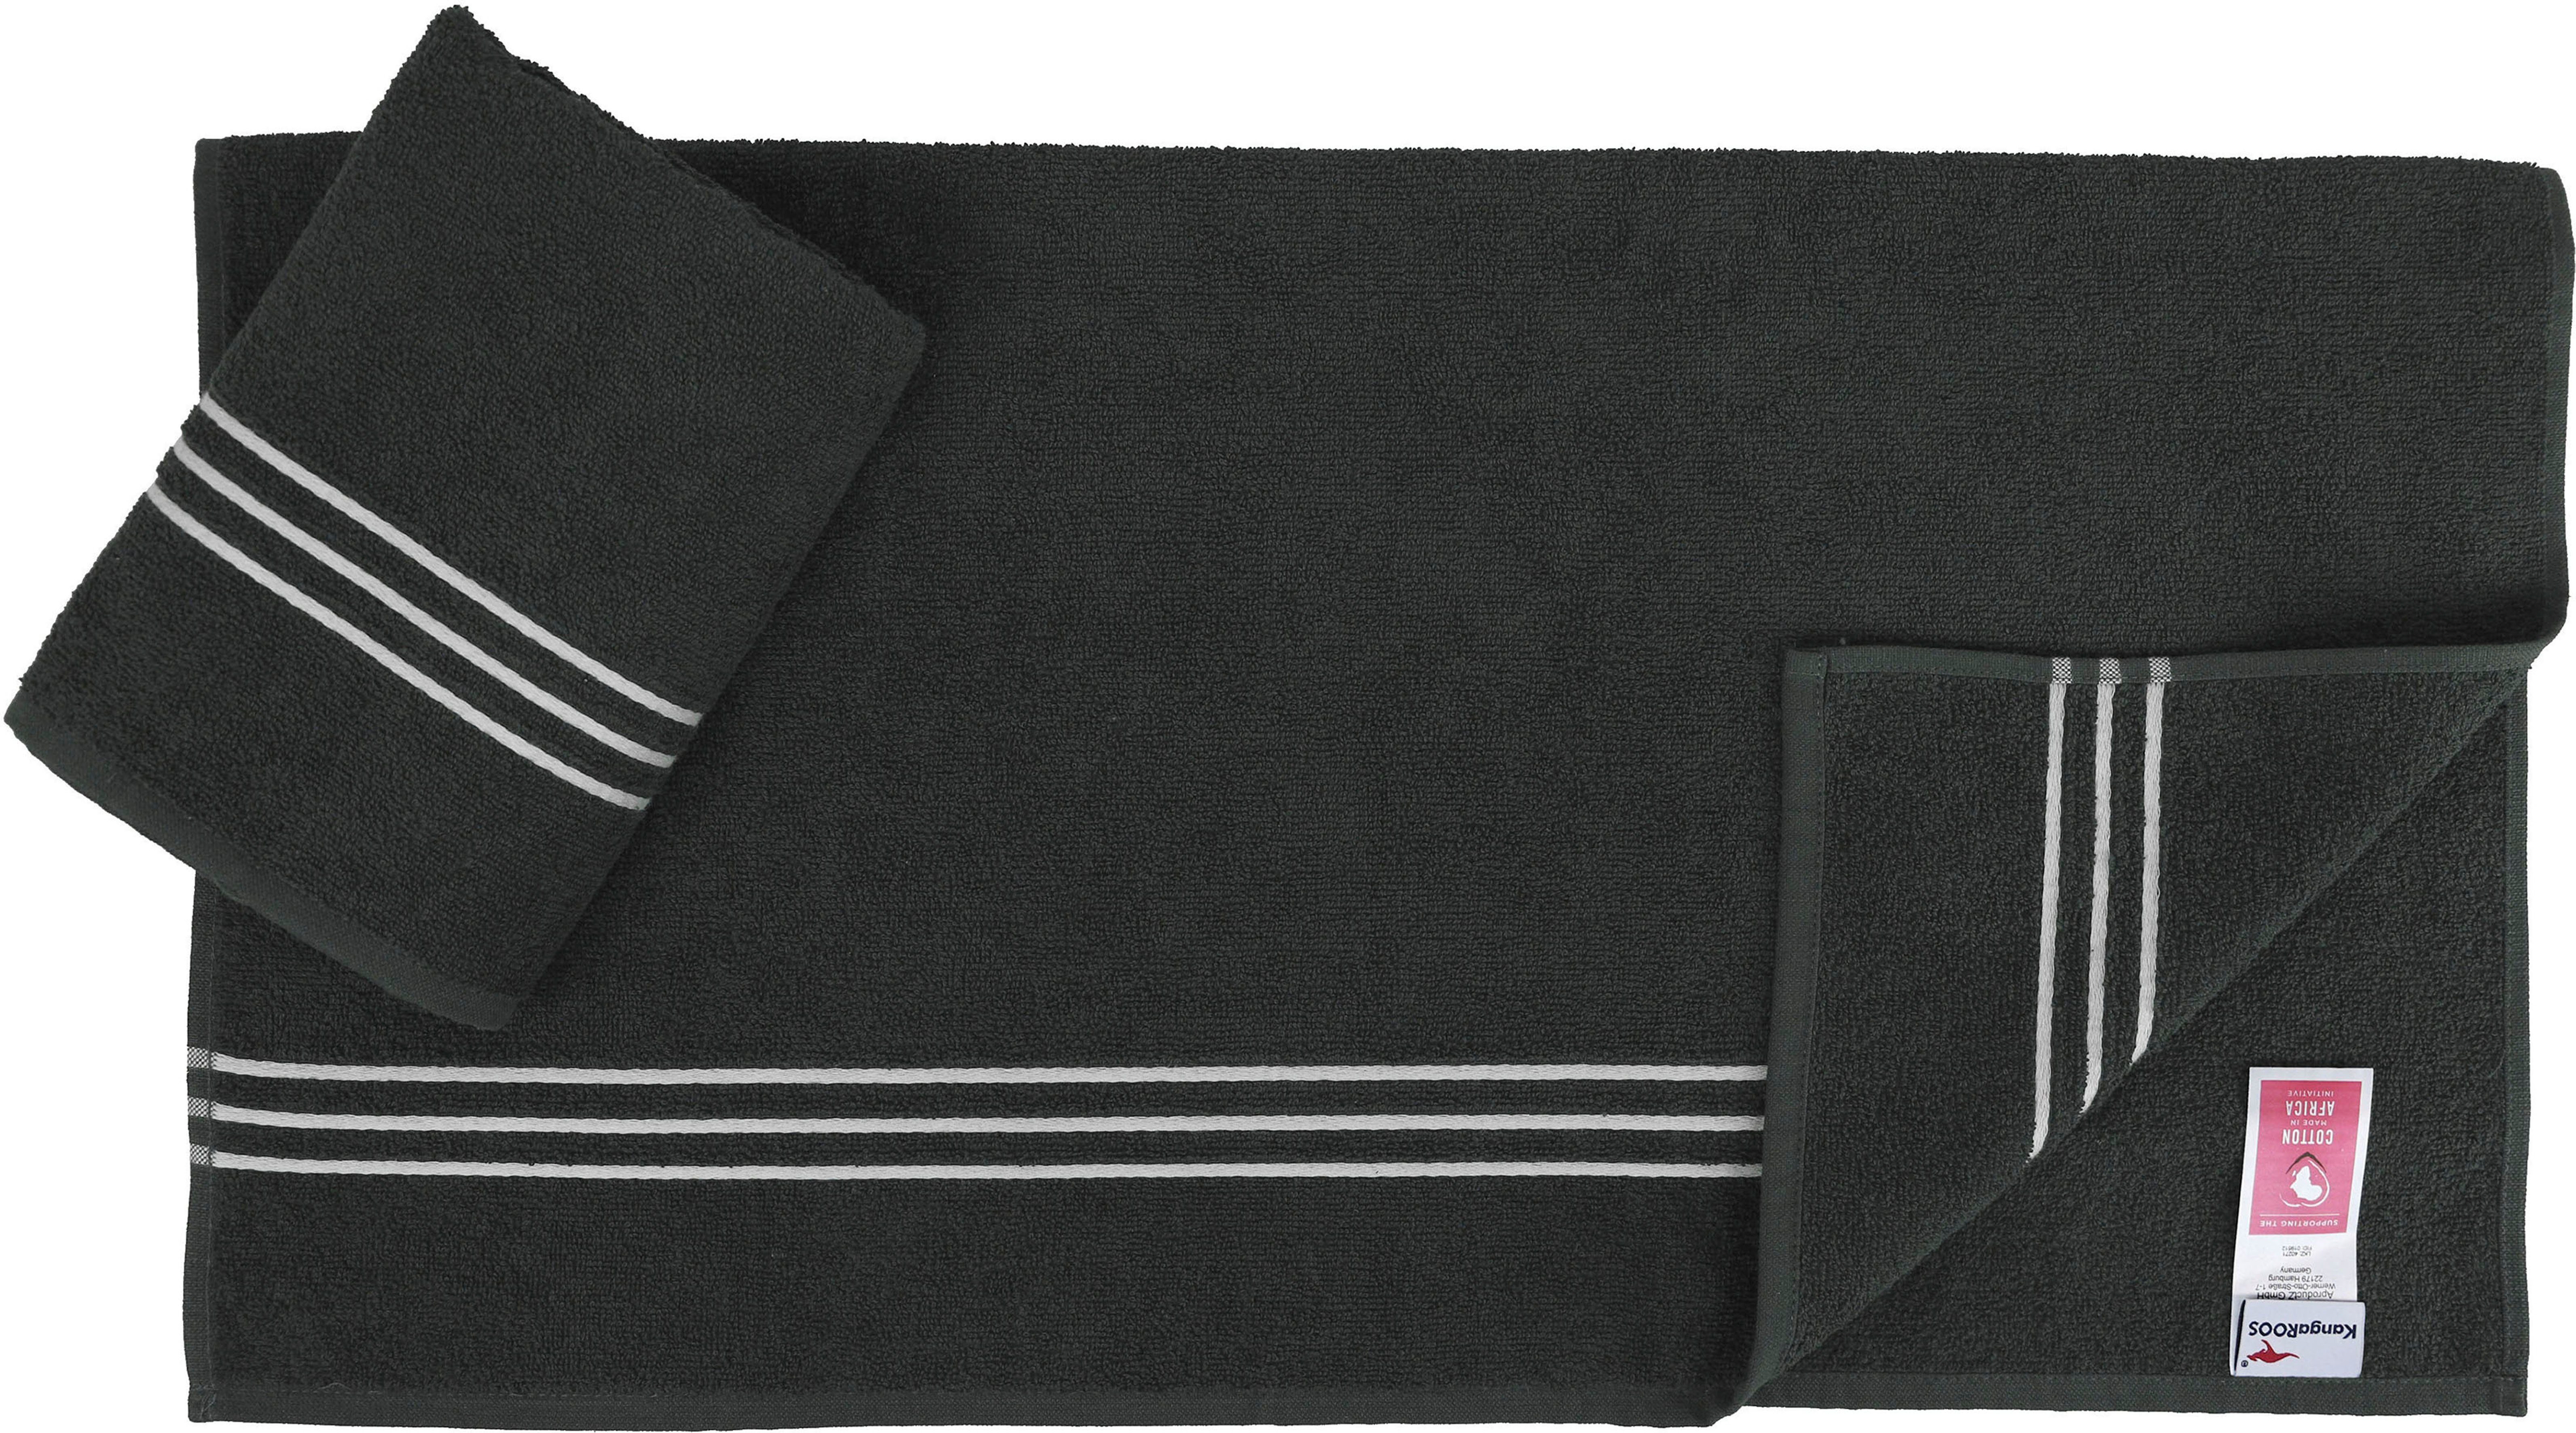 KangaROOS Handtuch Set Dalia, anthracite 100% (Set, mit Walkfrottier, 6-tlg), Handtuch-Set Baumwolle einfarbiges Streifenbordüre, aus